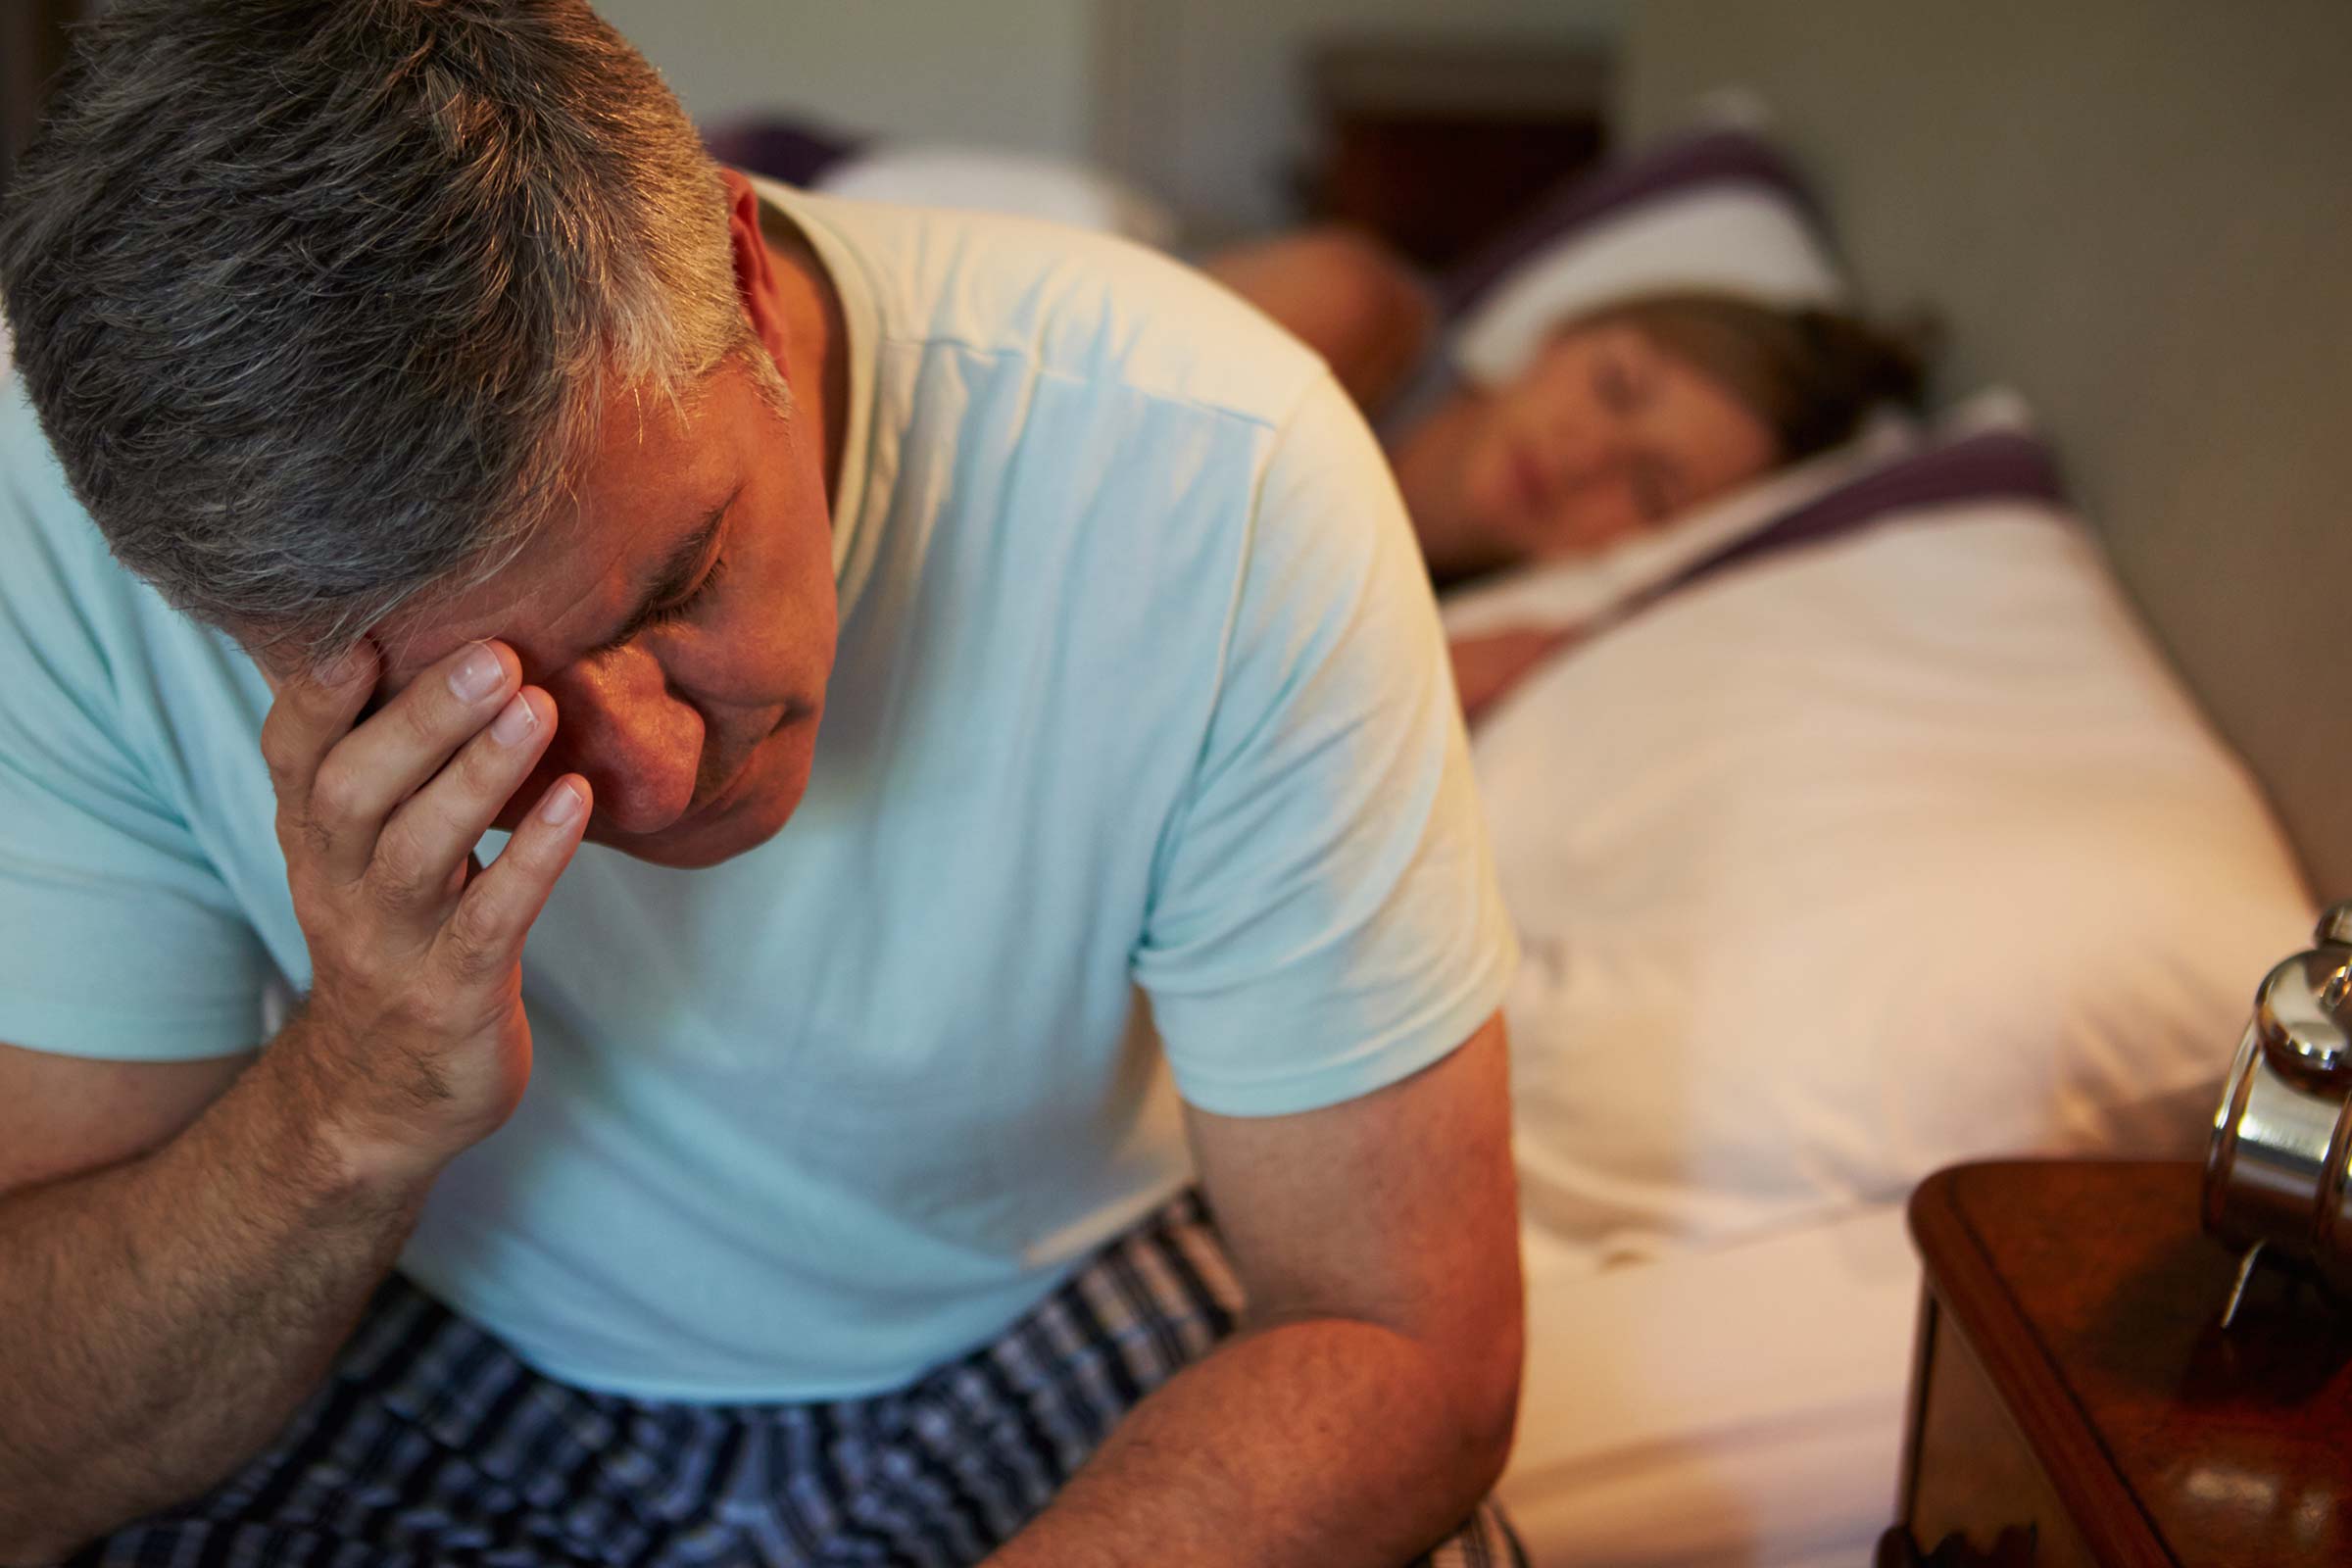 Недостаток сна и избыточный сон увеличивают риск сердечного приступа